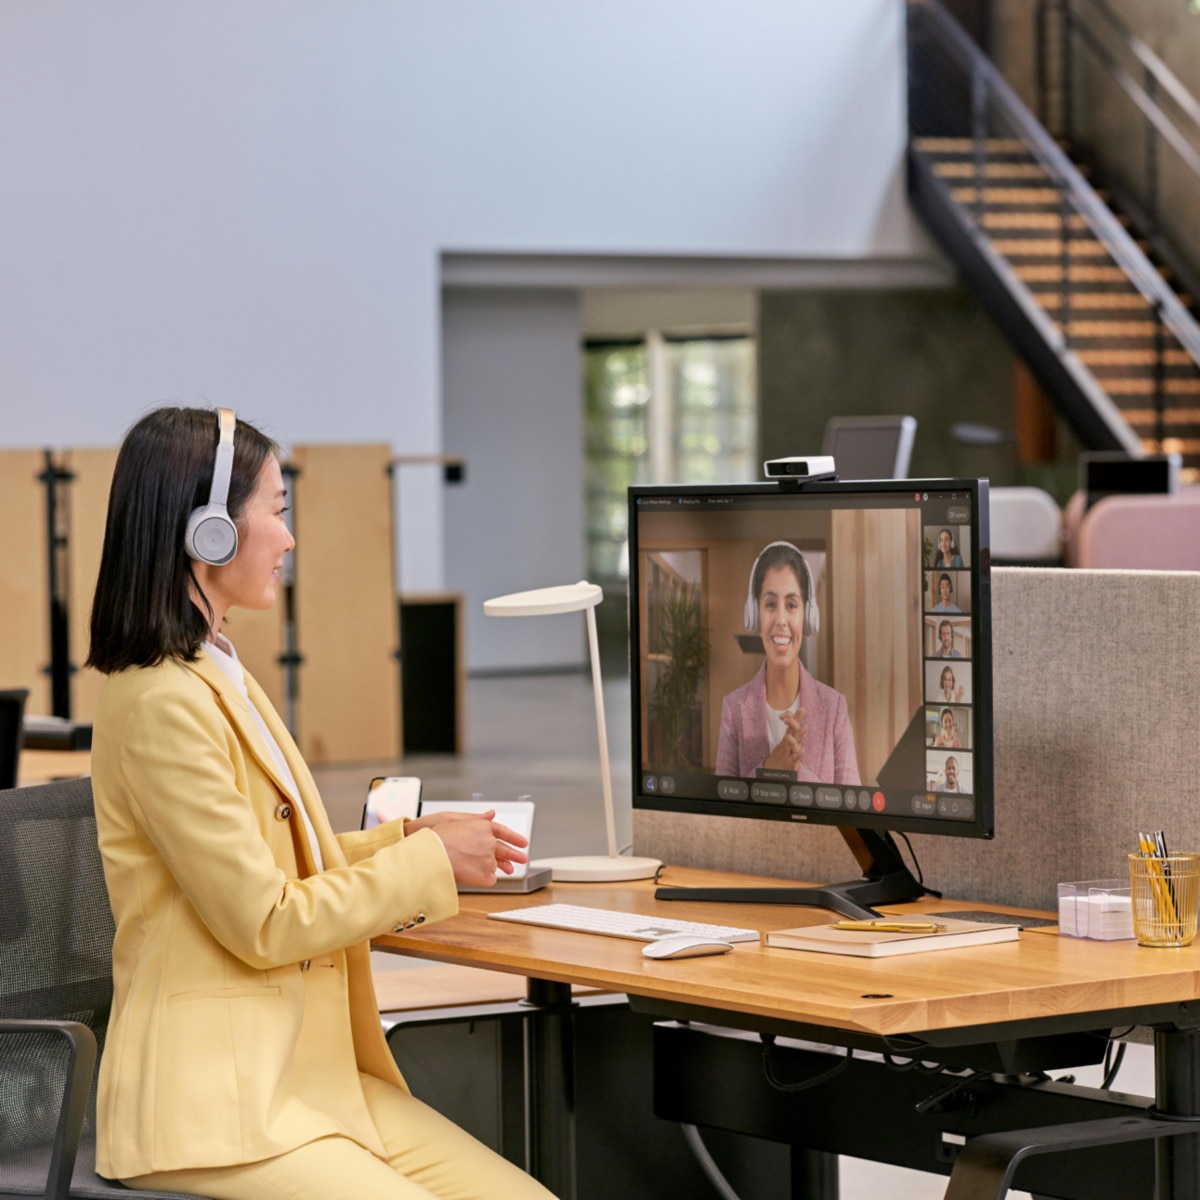 Eine Person in einem hellgelben Anzug bei der Arbeit an ihrem Arbeitsplatz im Büro. Sie trägt ein Headset und führt eine Videokonferenz mit ihren Kolleginnen und Kollegen.